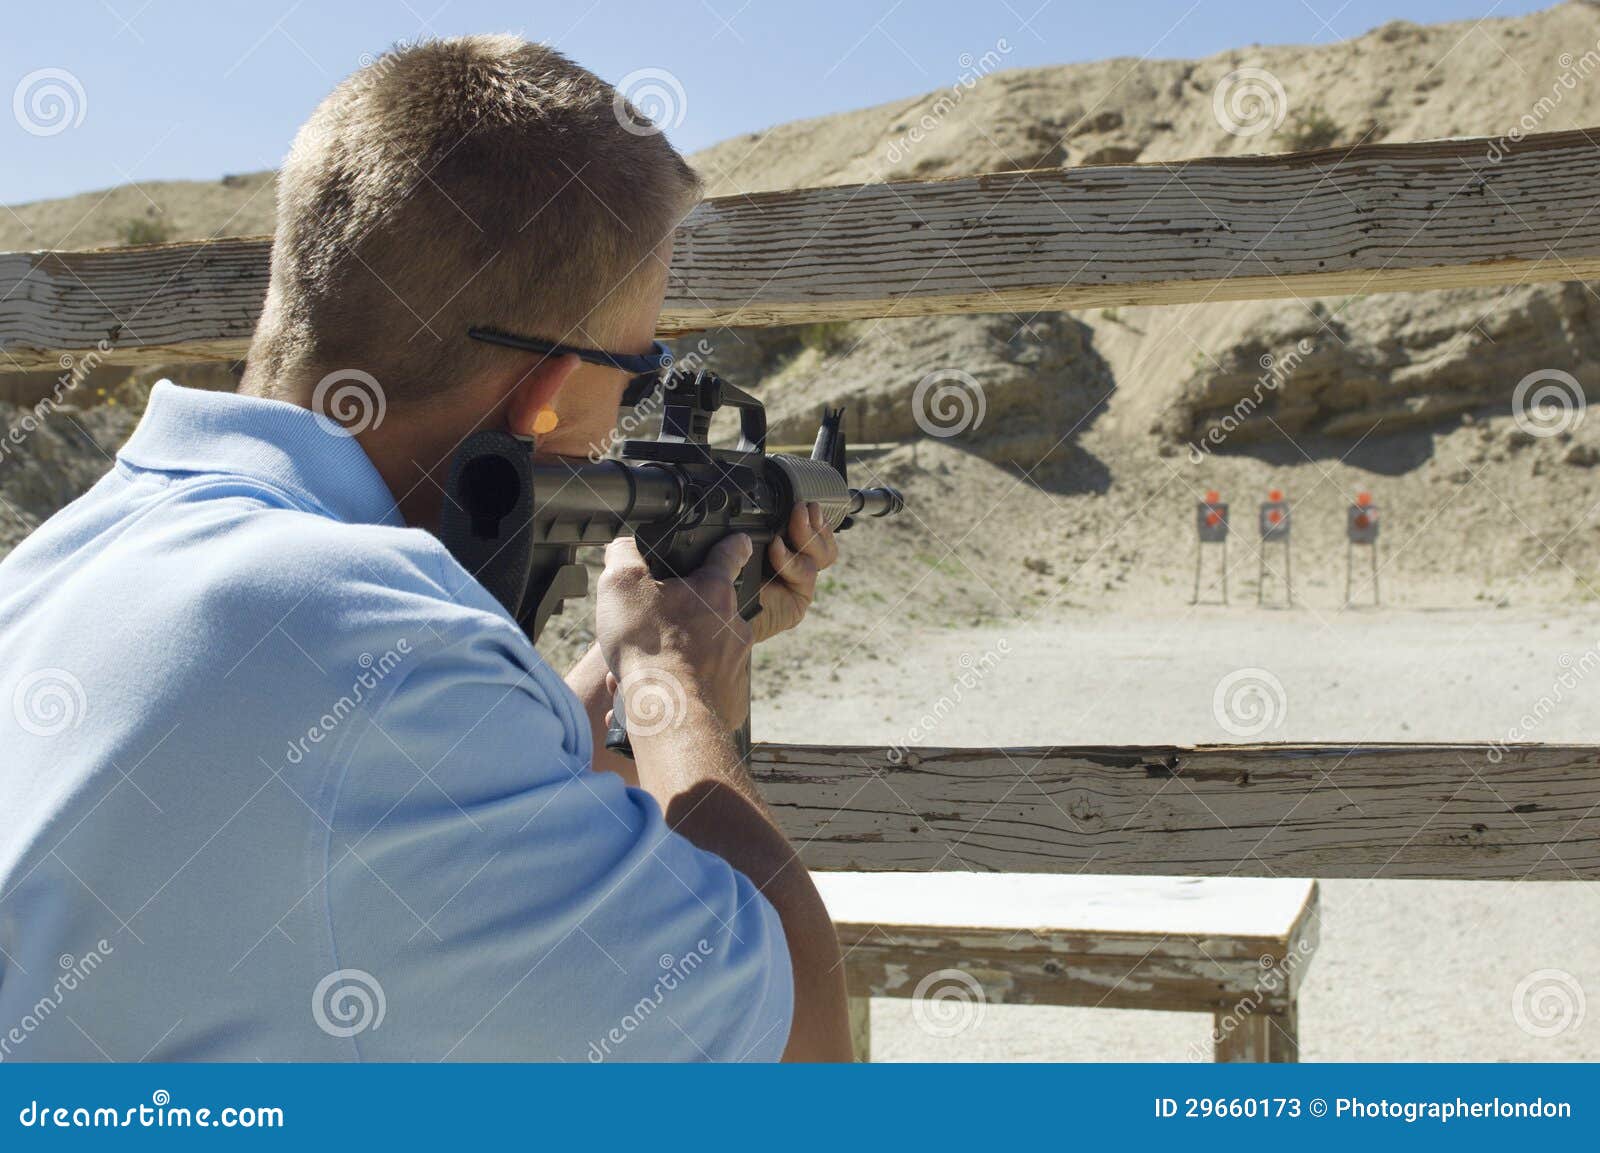 man aiming machine gun at firing range